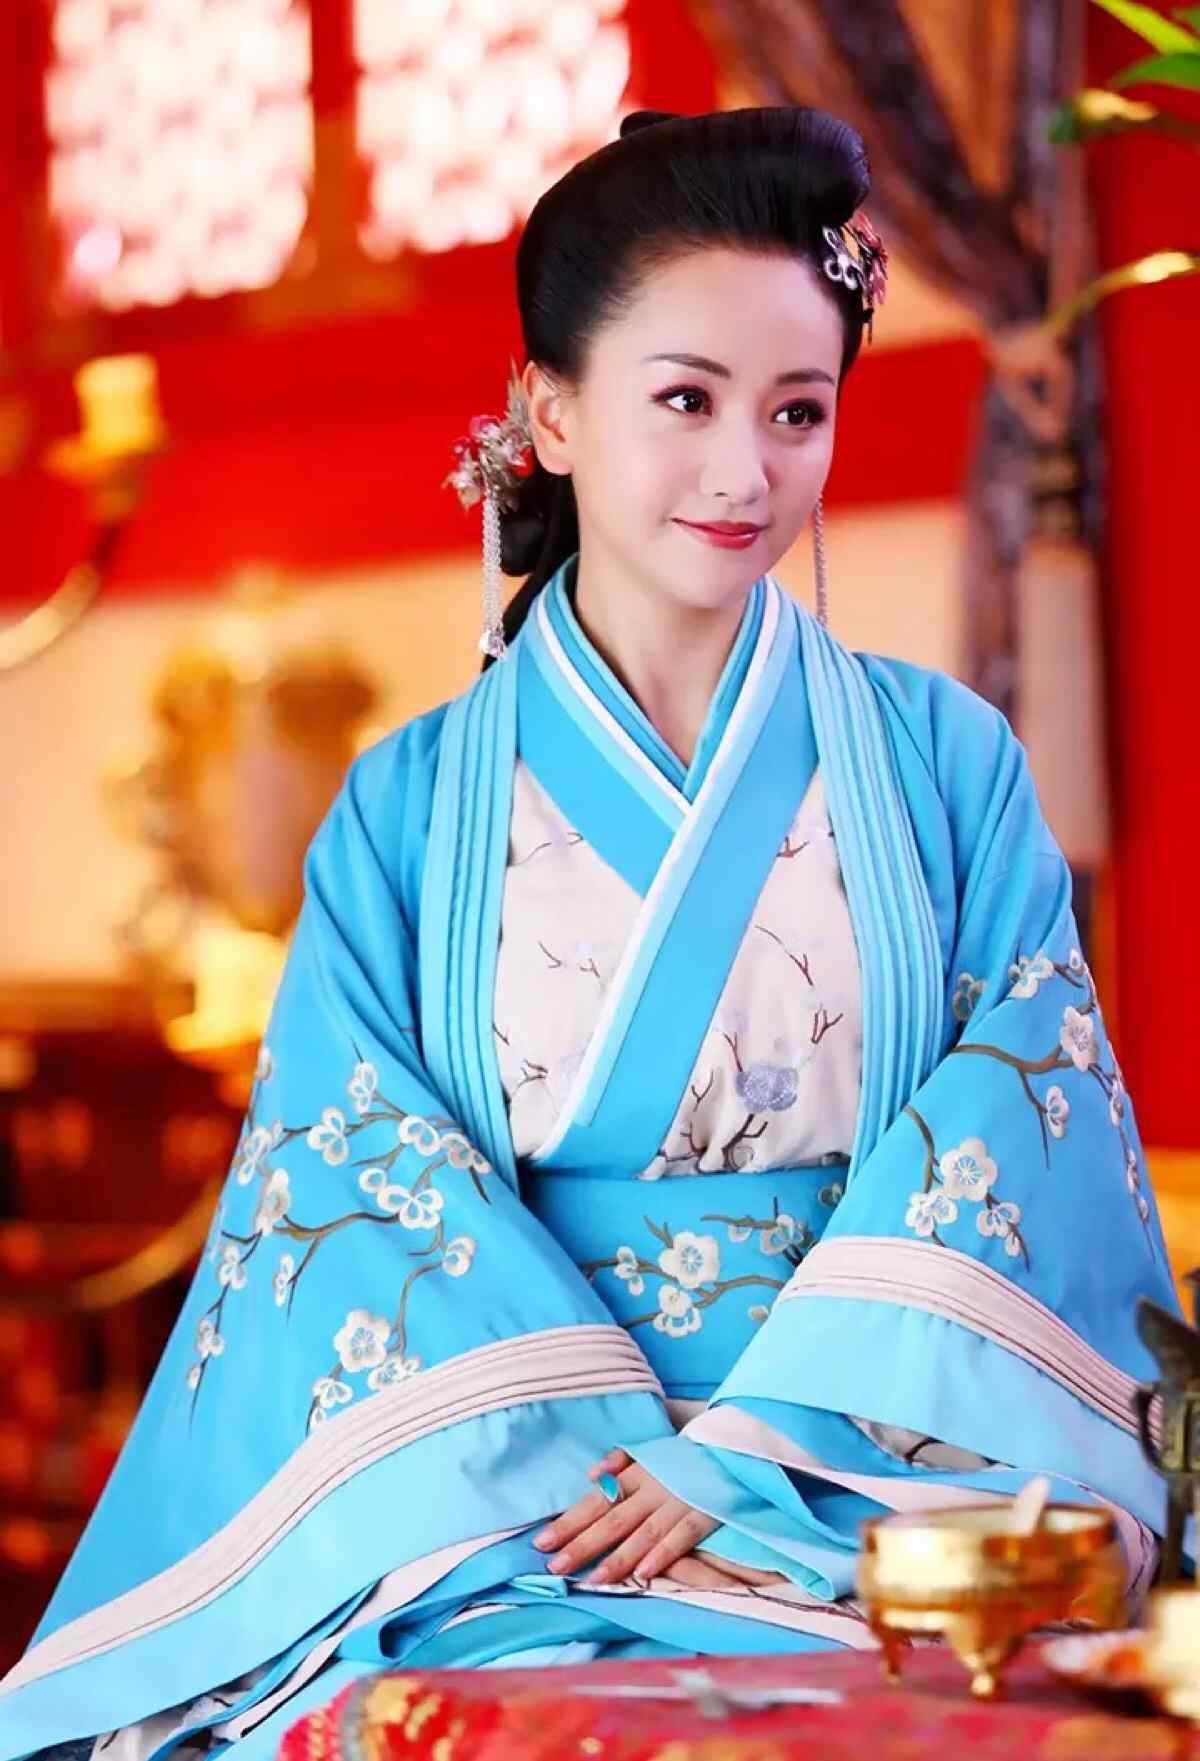 杨蓉最新写真曝光 米色质感西装优雅干练